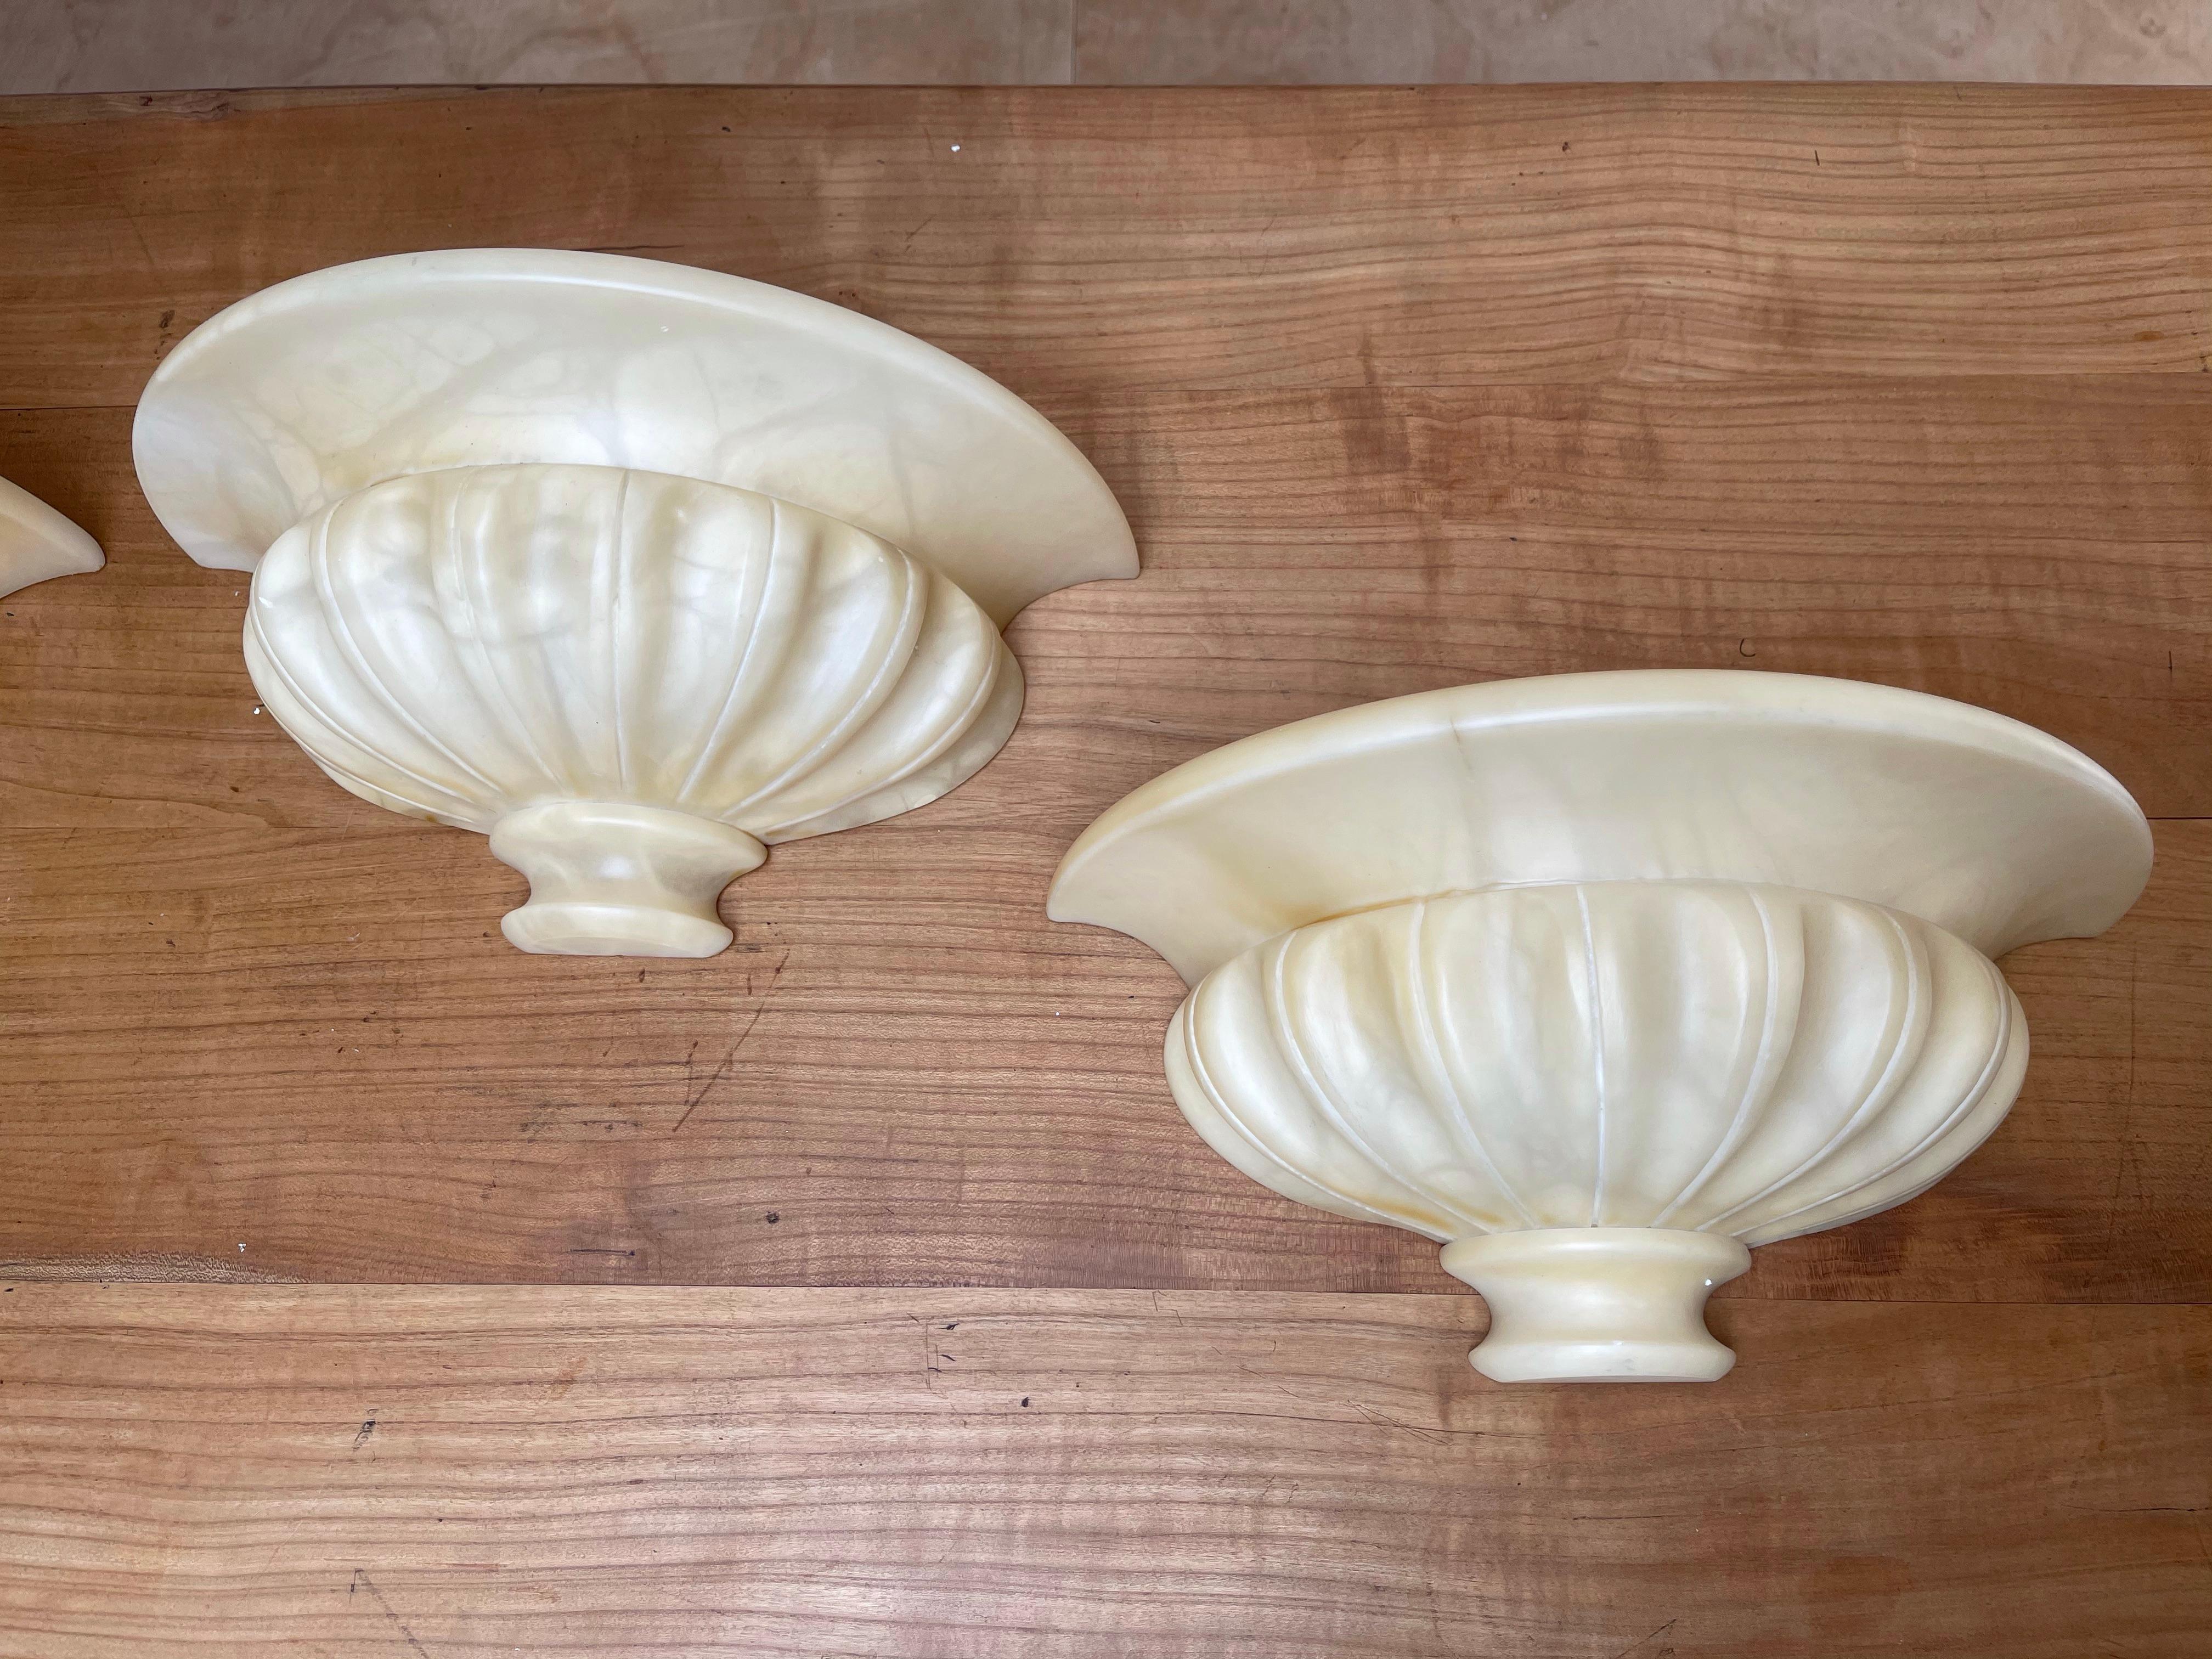 Wunderbare Gruppe von 4 Alabaster, klassische Vase Design Wandlampen.

Diese Wandleuchten in guter Größe und tollem Design mit warmen Lichteigenschaften sind alle in hervorragendem Zustand. Das Aussehen und die Haptik dieser Alabastertöne (mit oder